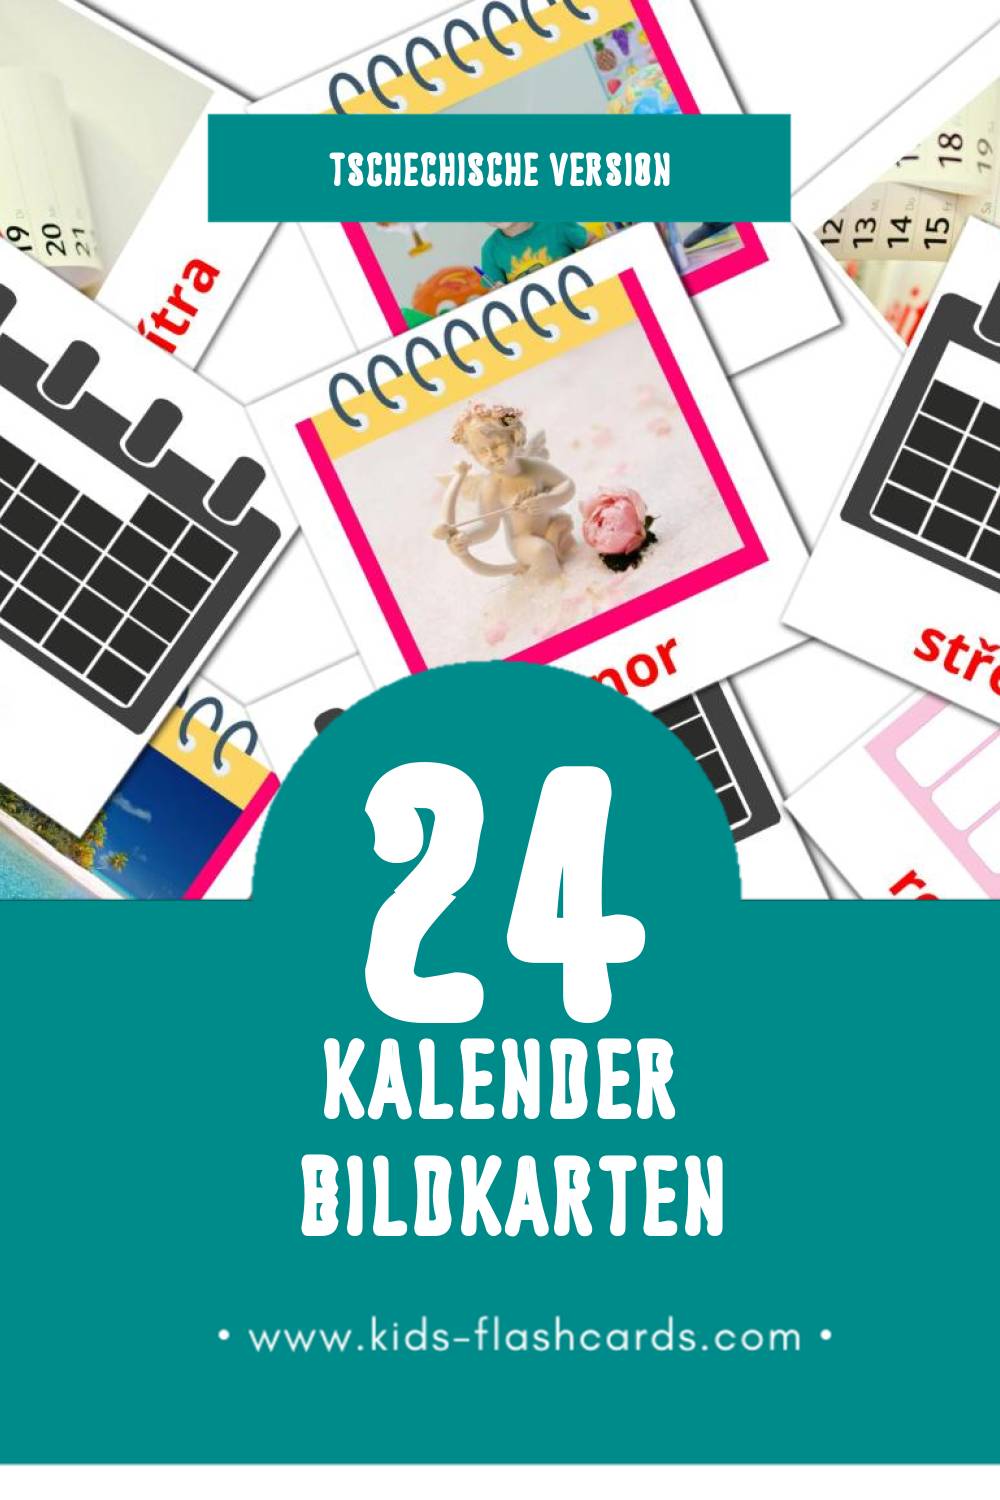 Visual Kalendář Flashcards für Kleinkinder (24 Karten in Tschechisch)